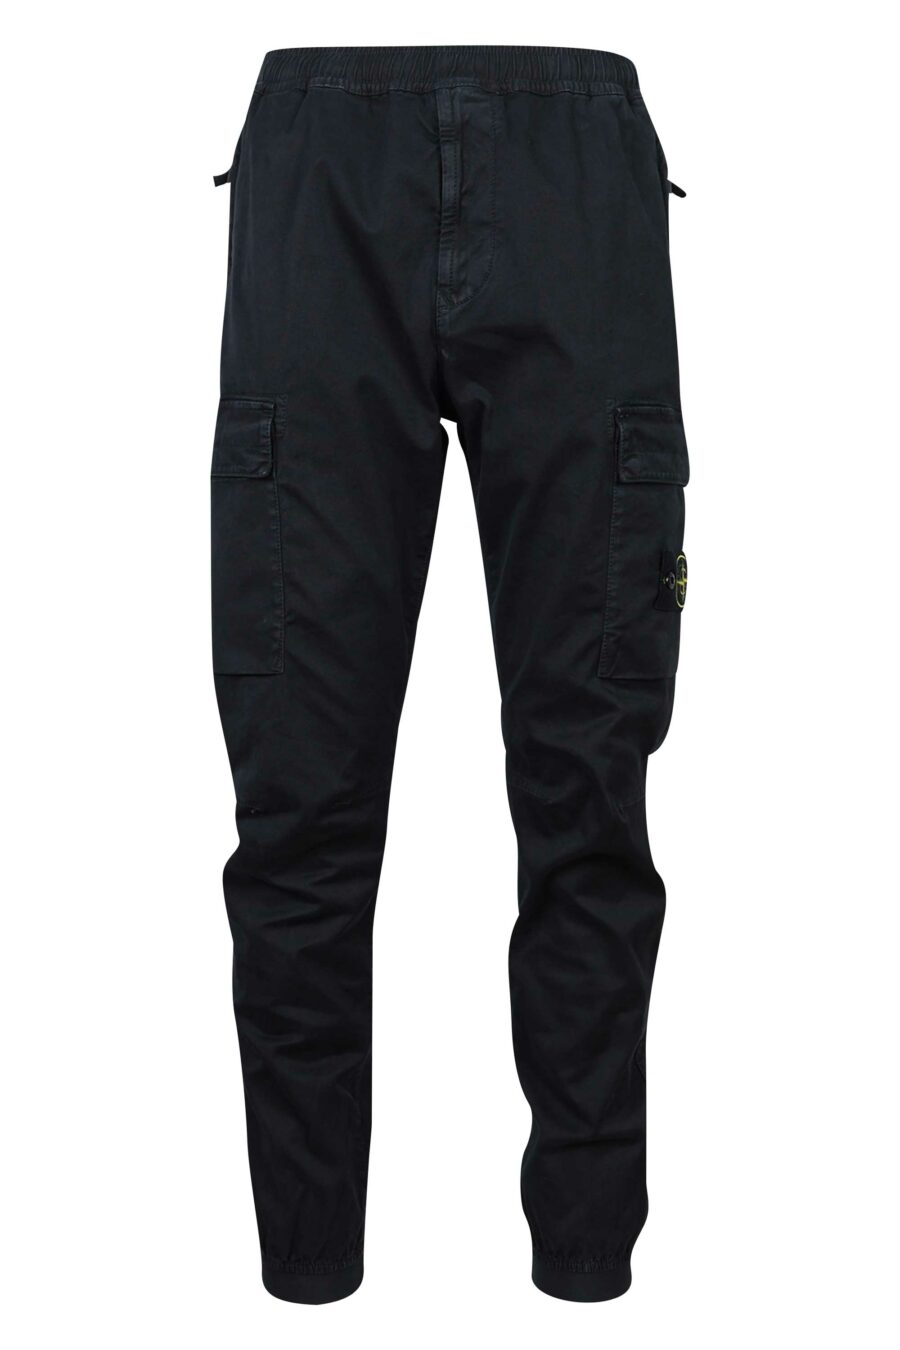 Pantalon noir avec patch logo sur le côté - 8052572723292